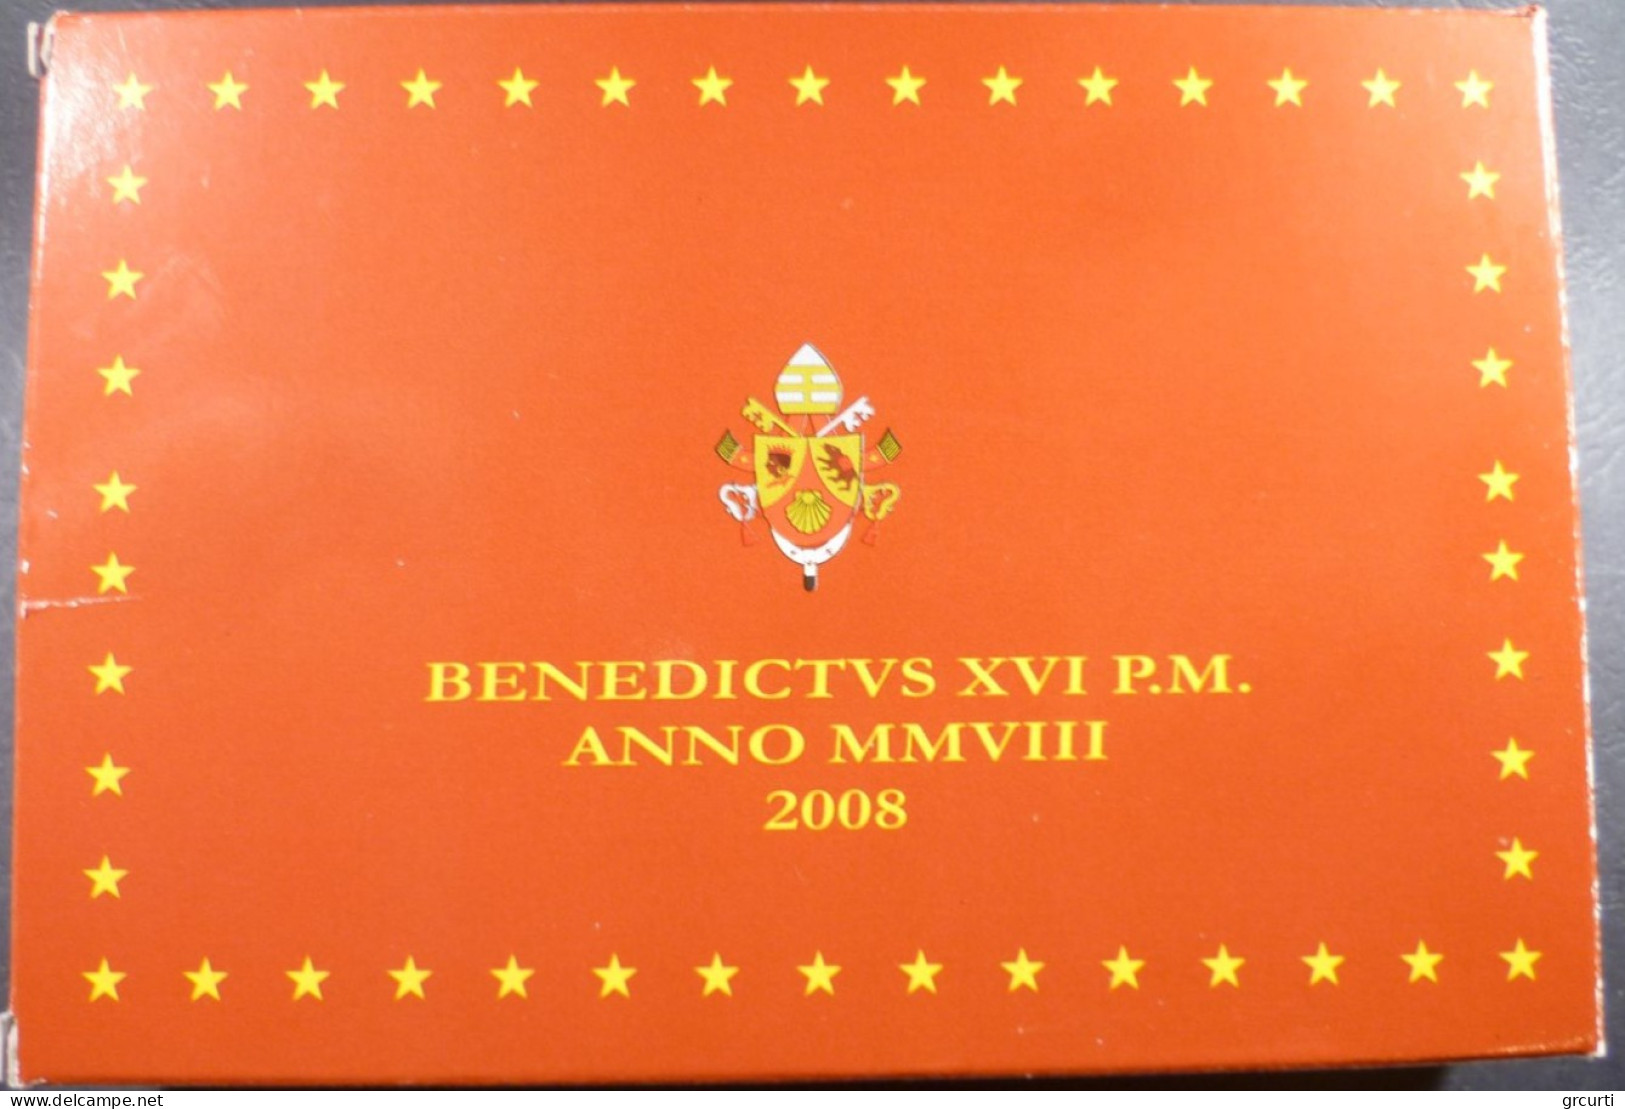 Vaticano - 2008 - Benedetto XVI - Serie zecca 8 valori fondo specchio - Con medaglia in argento